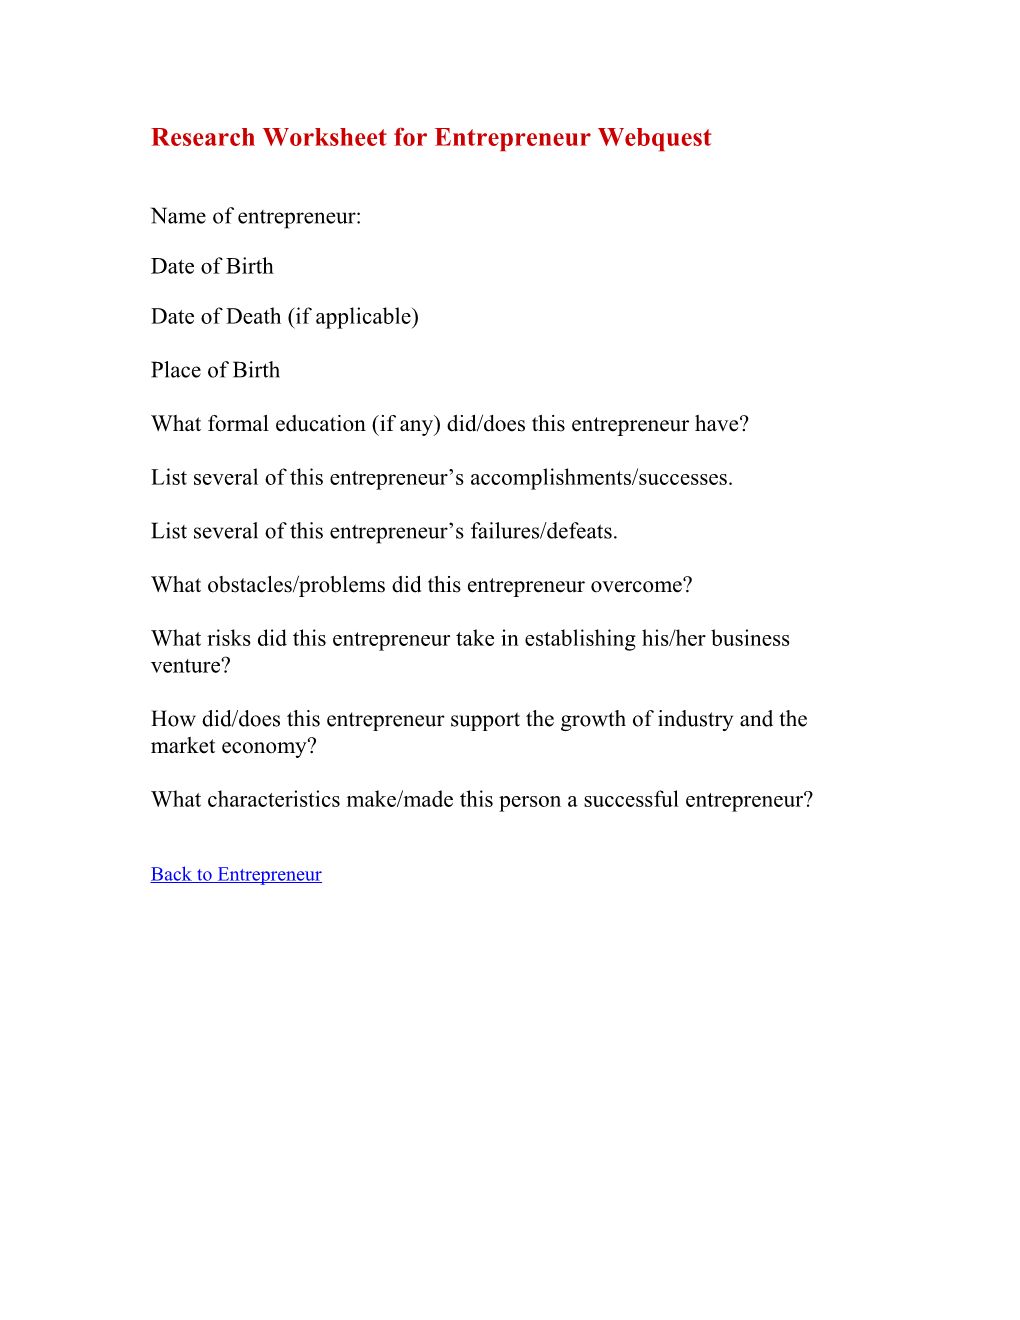 Research Worksheet For Entrepreneur Webquest